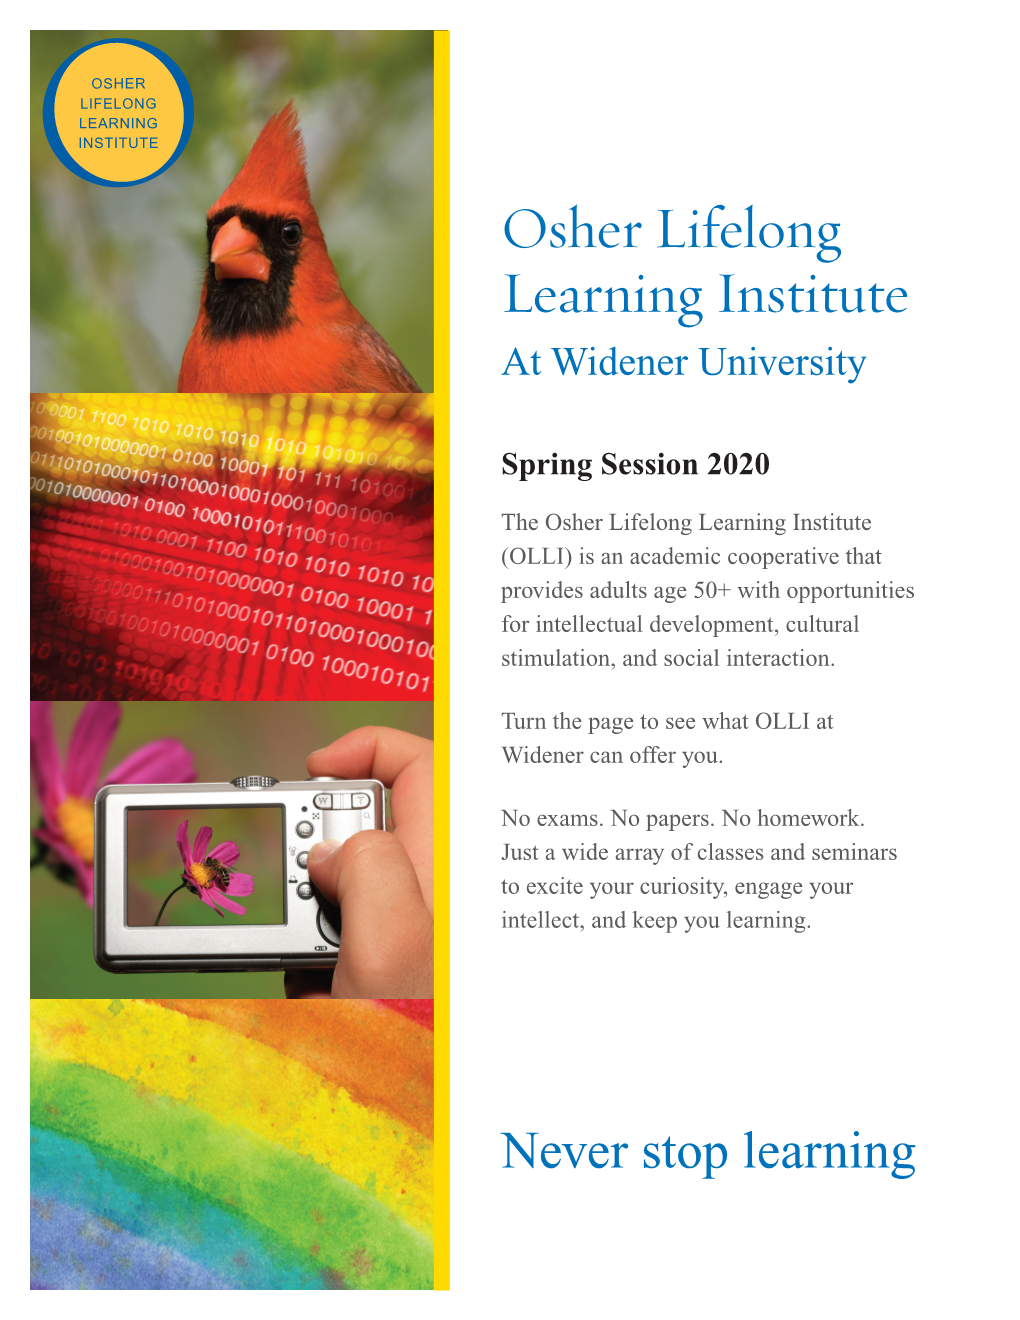 Osher Lifelong Learning Institute at Widener University